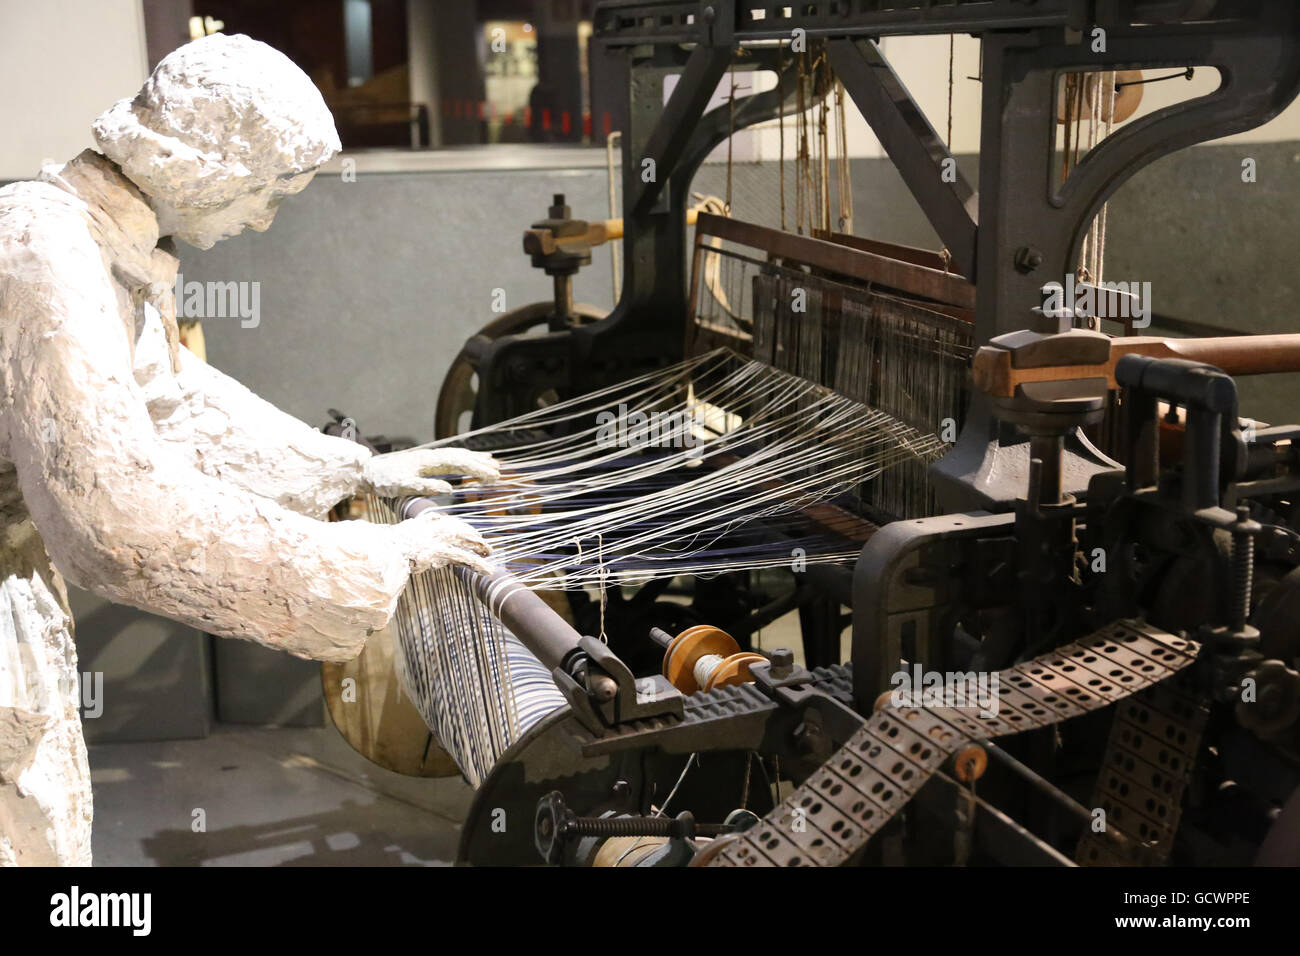 Fábricas de textiles. Siglo xix. Mujer trabajó en la textil. La reproducción. España.Museo de Historia de Cataluña, Barcelona Fotografía de stock - Alamy